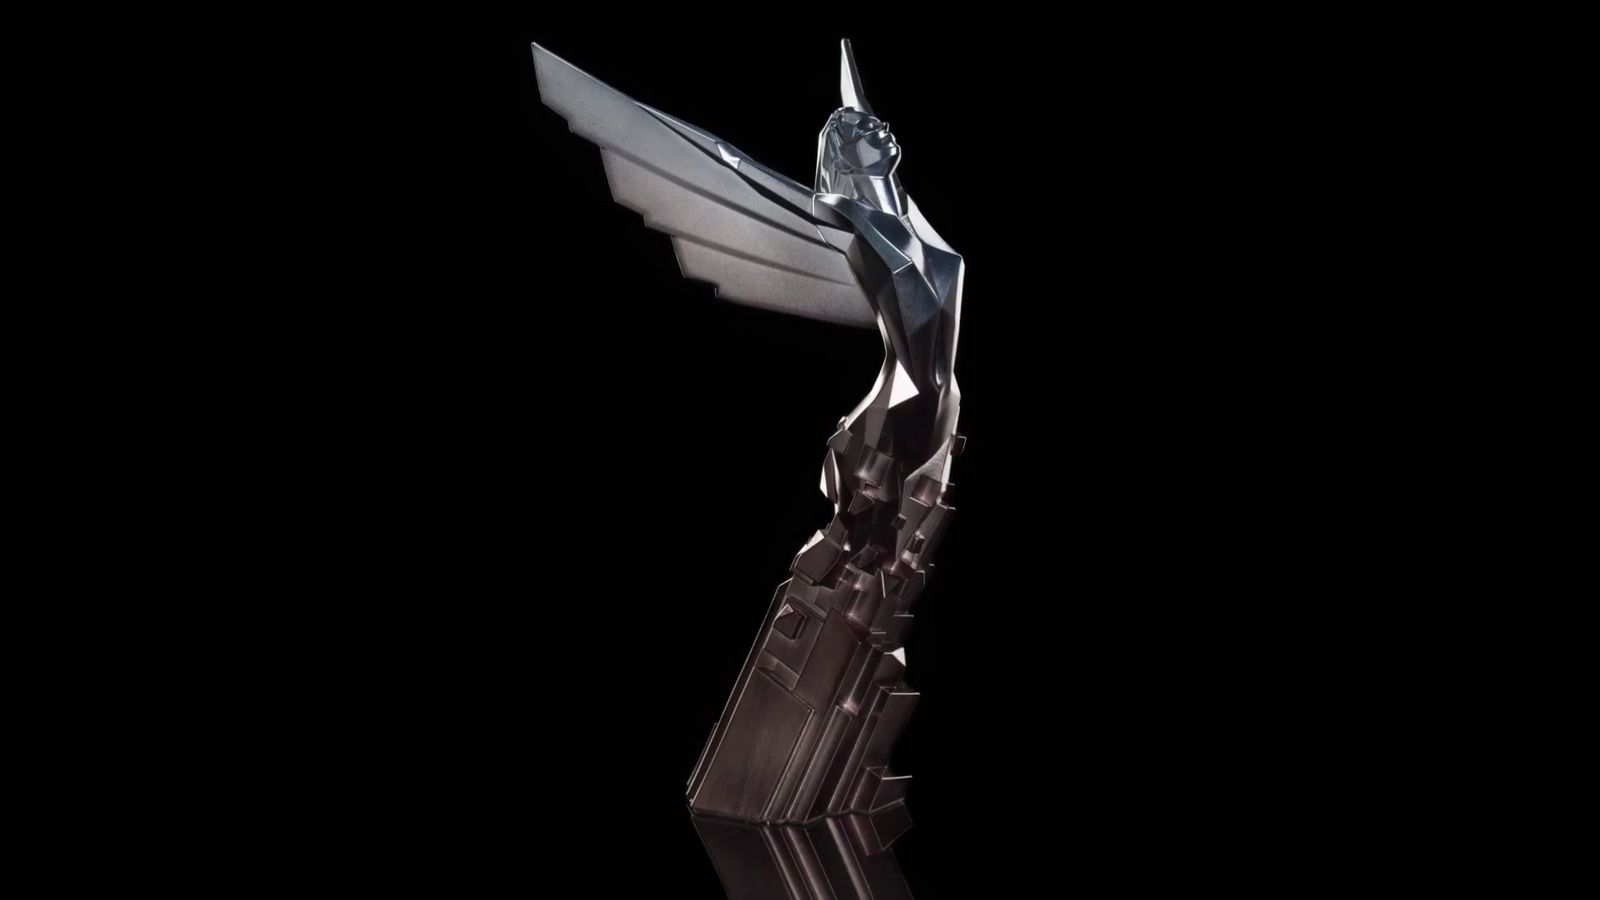 The Game Awards 2016 tem Overwatch como jogo do ano e até